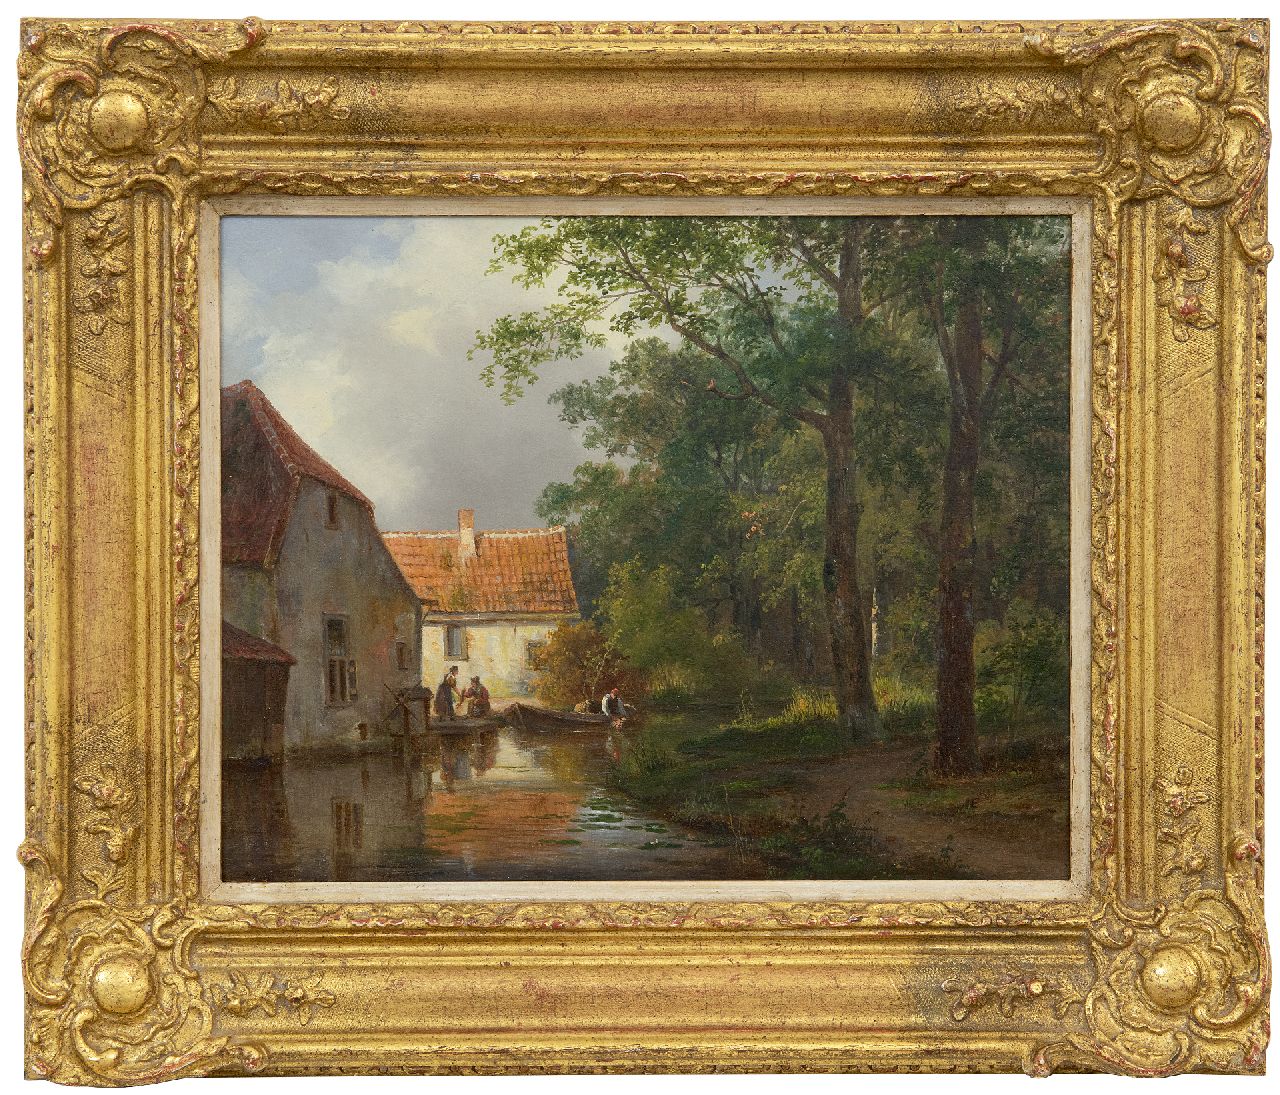 Breuhaus de Groot F.  | Frans Breuhaus de Groot | Schilderijen te koop aangeboden | Visverkoop aan de dorpsbeek, olieverf op paneel 24,4 x 30,6 cm, gesigneerd rechtsonder (vaag)